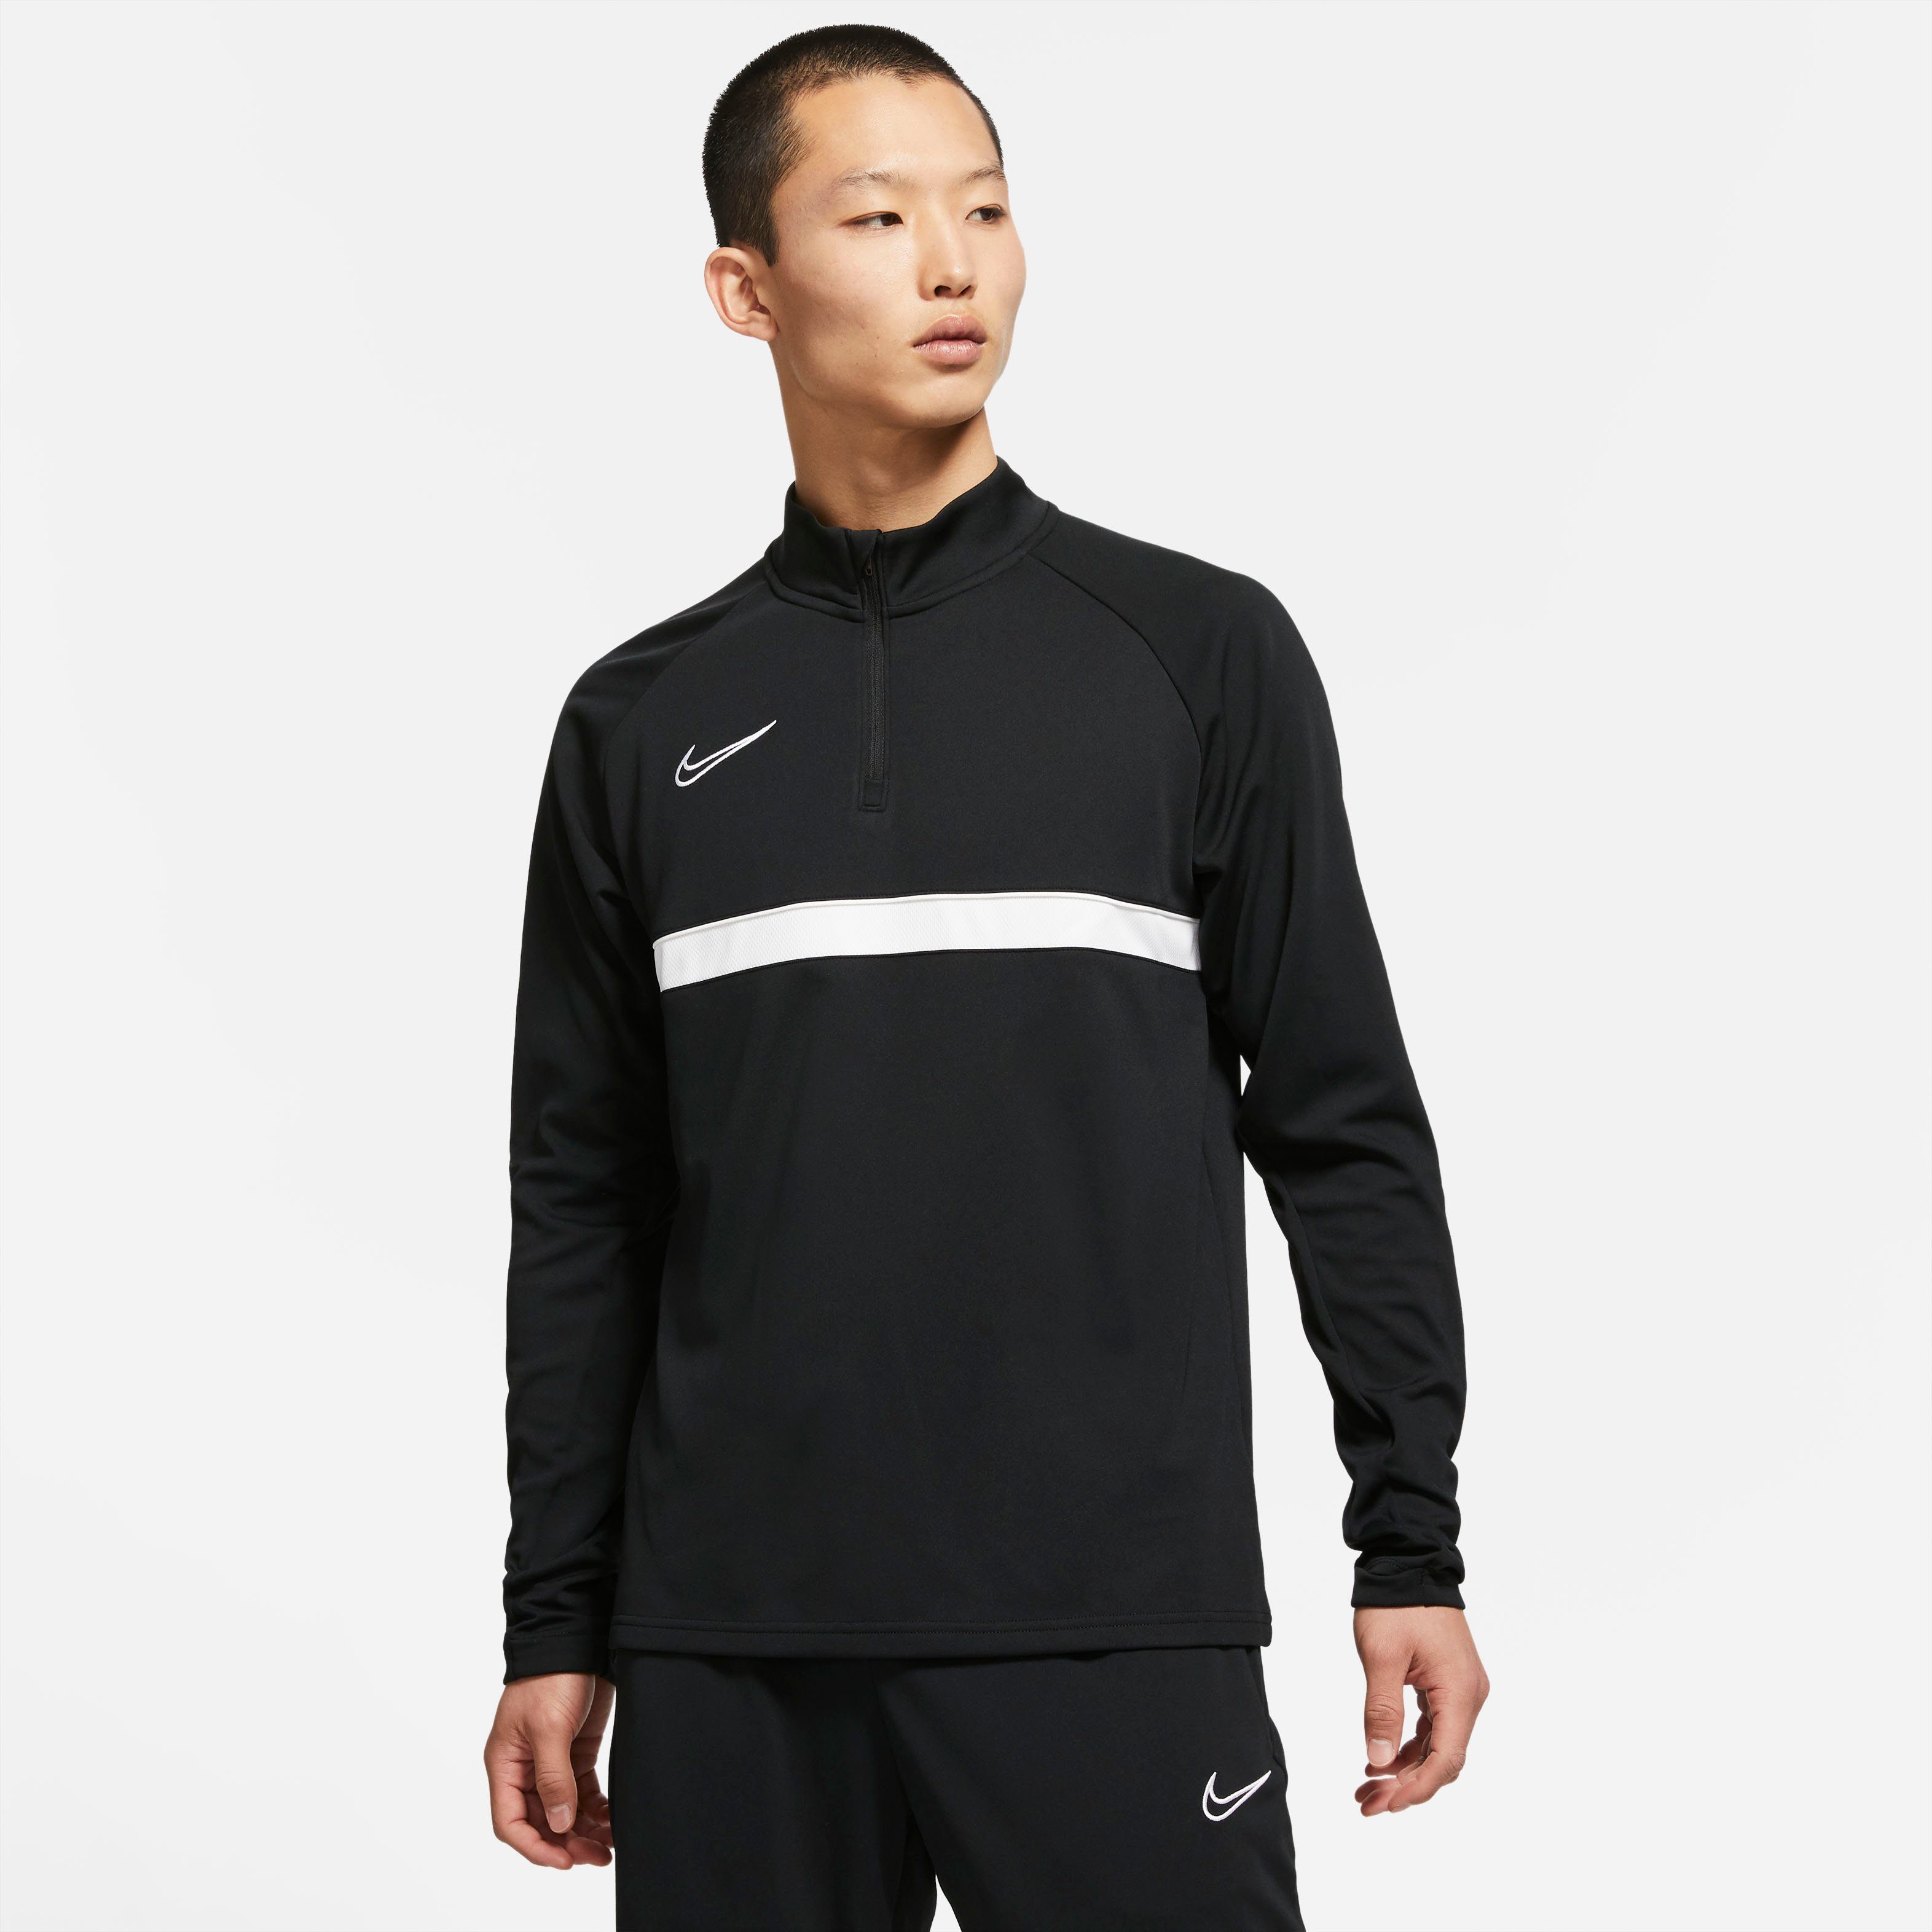 Nike Funktionsshirts online kaufen | OTTO